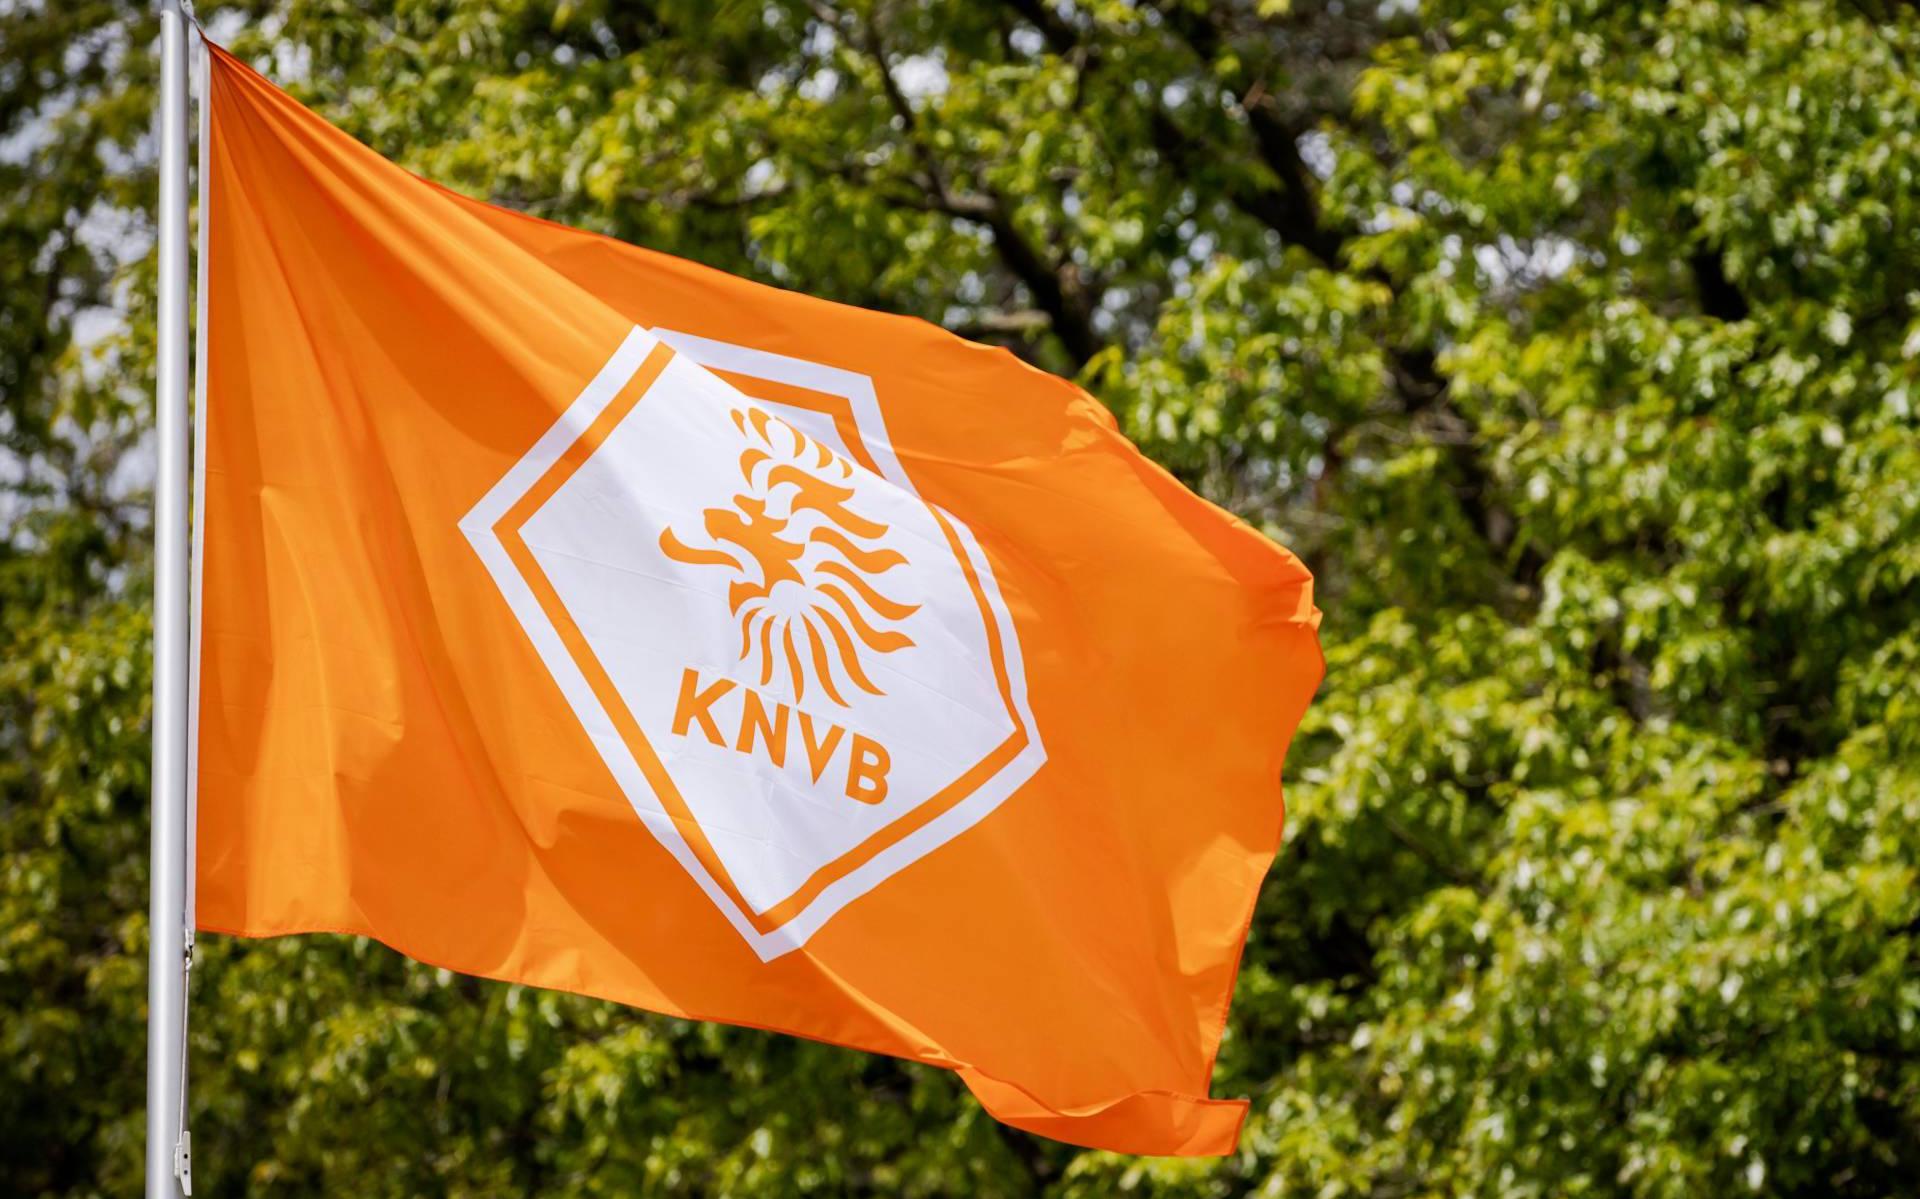 KNVB wil amateurspeler die coronatest verzweeg 2 maanden schorsen